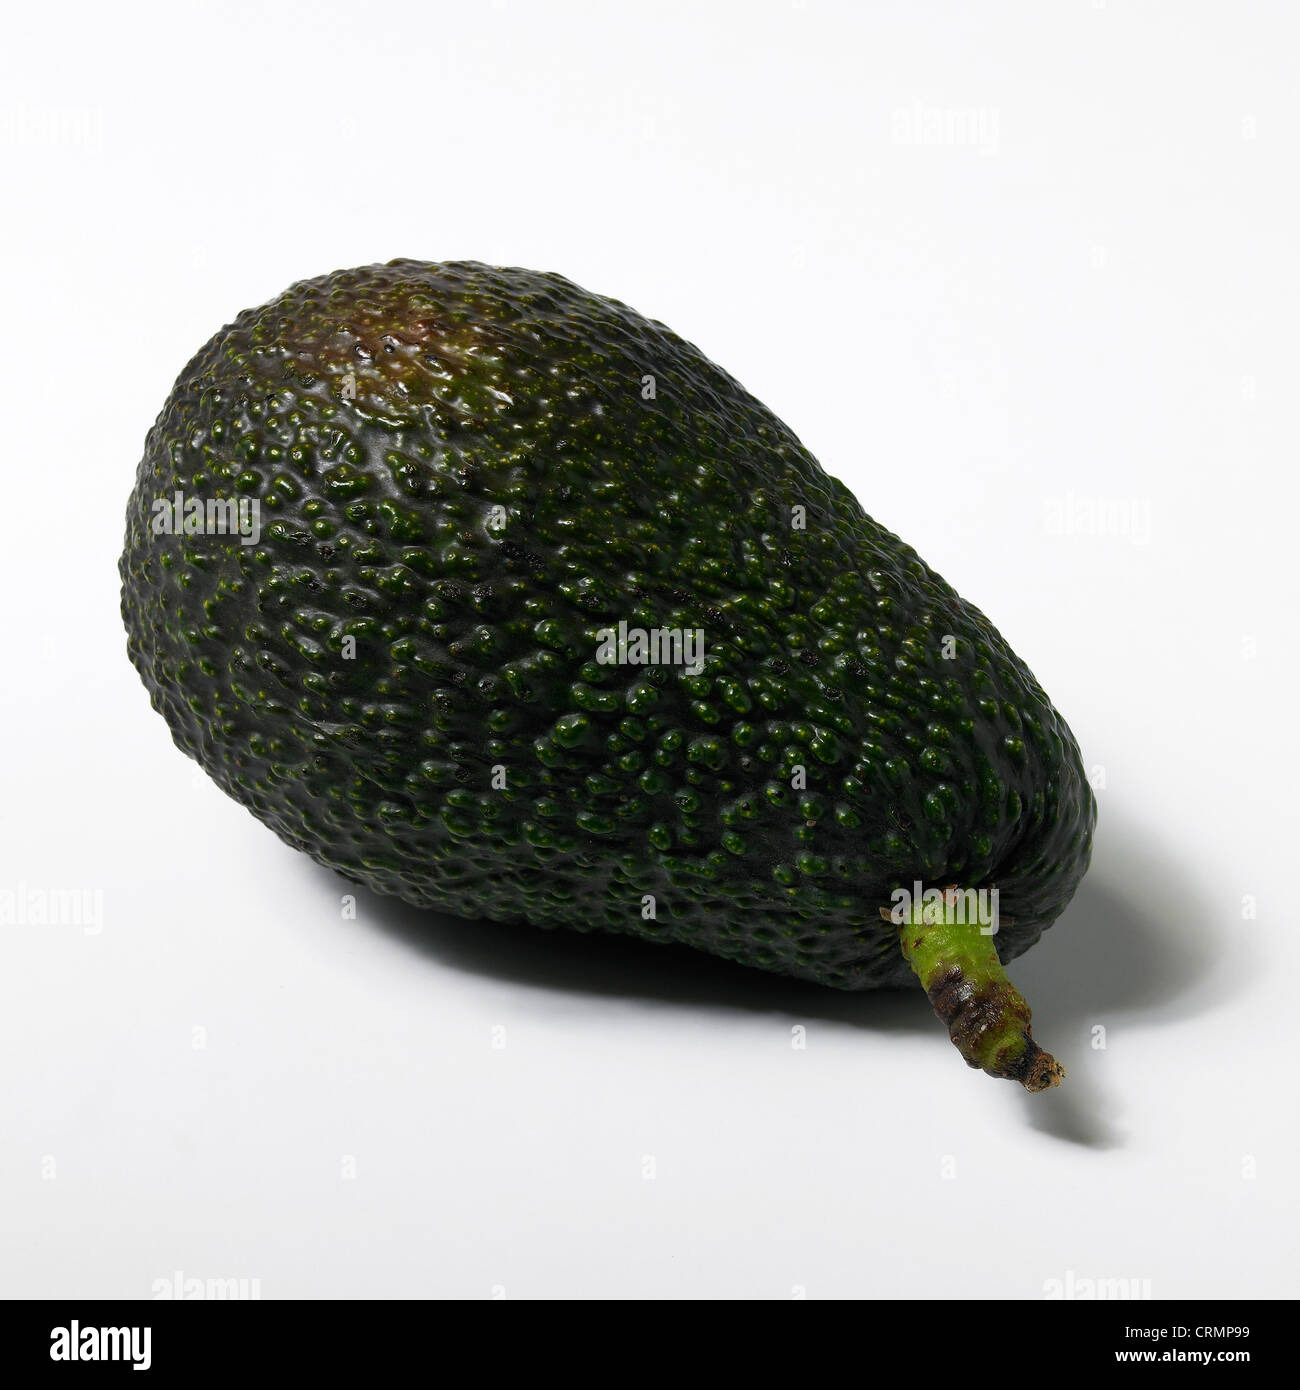 An avocado Stock Photo